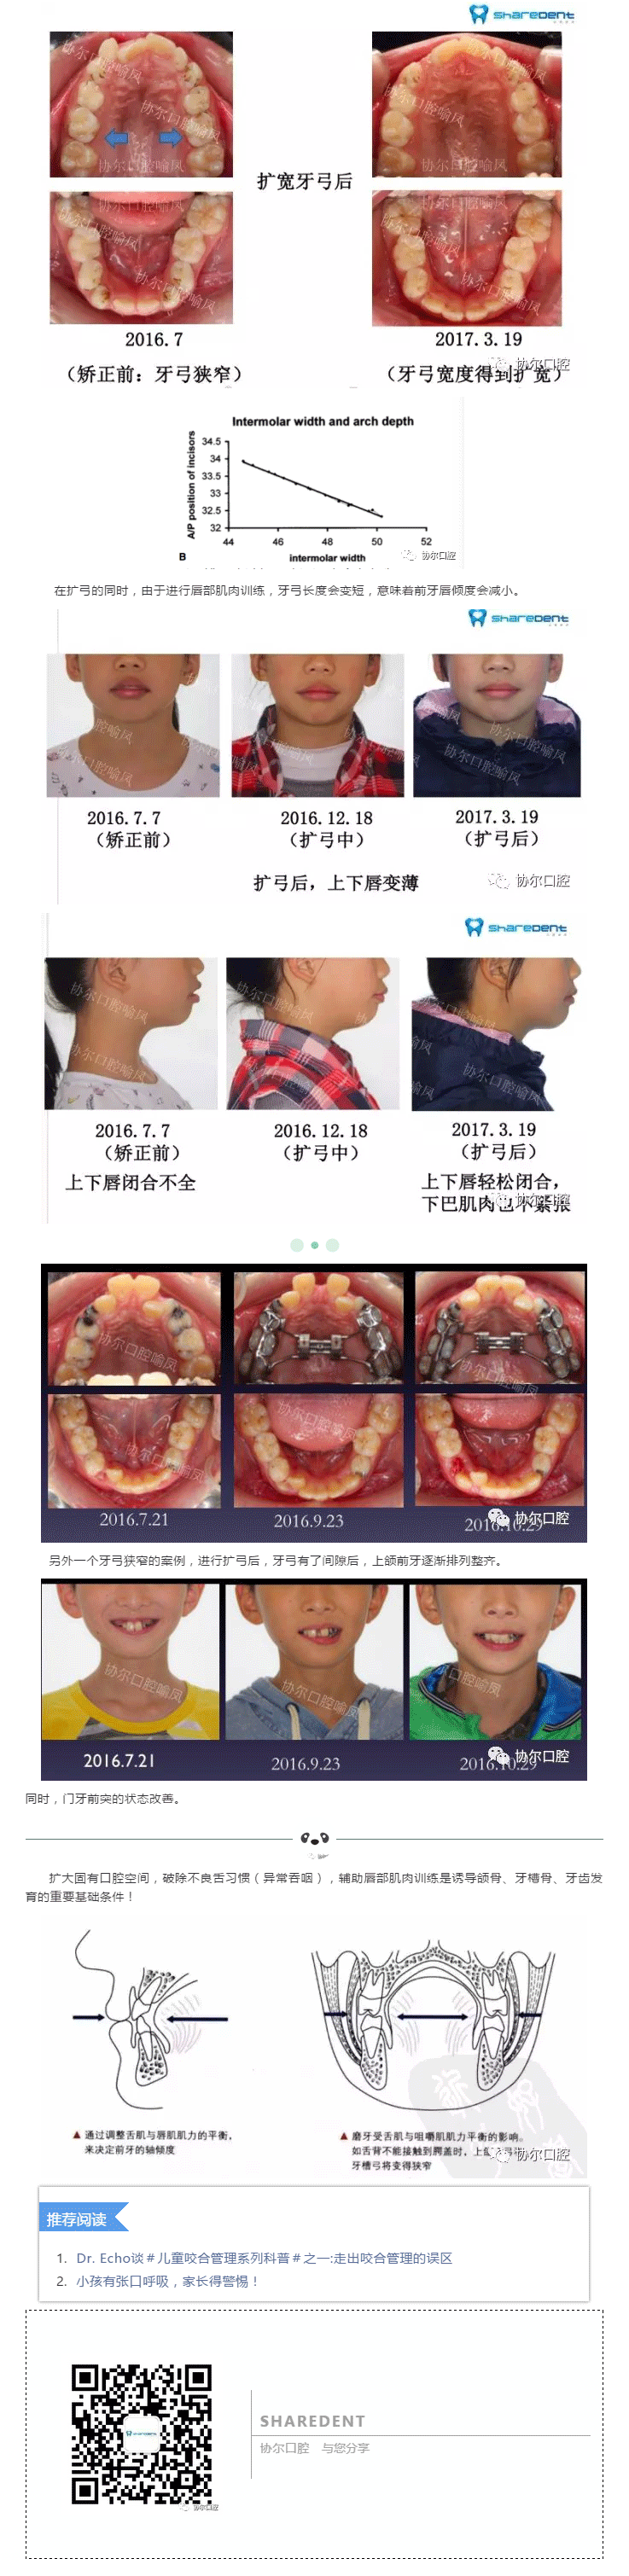 牙弓狭窄,腭部高拱,隐藏的儿童牙颌面部发育异常